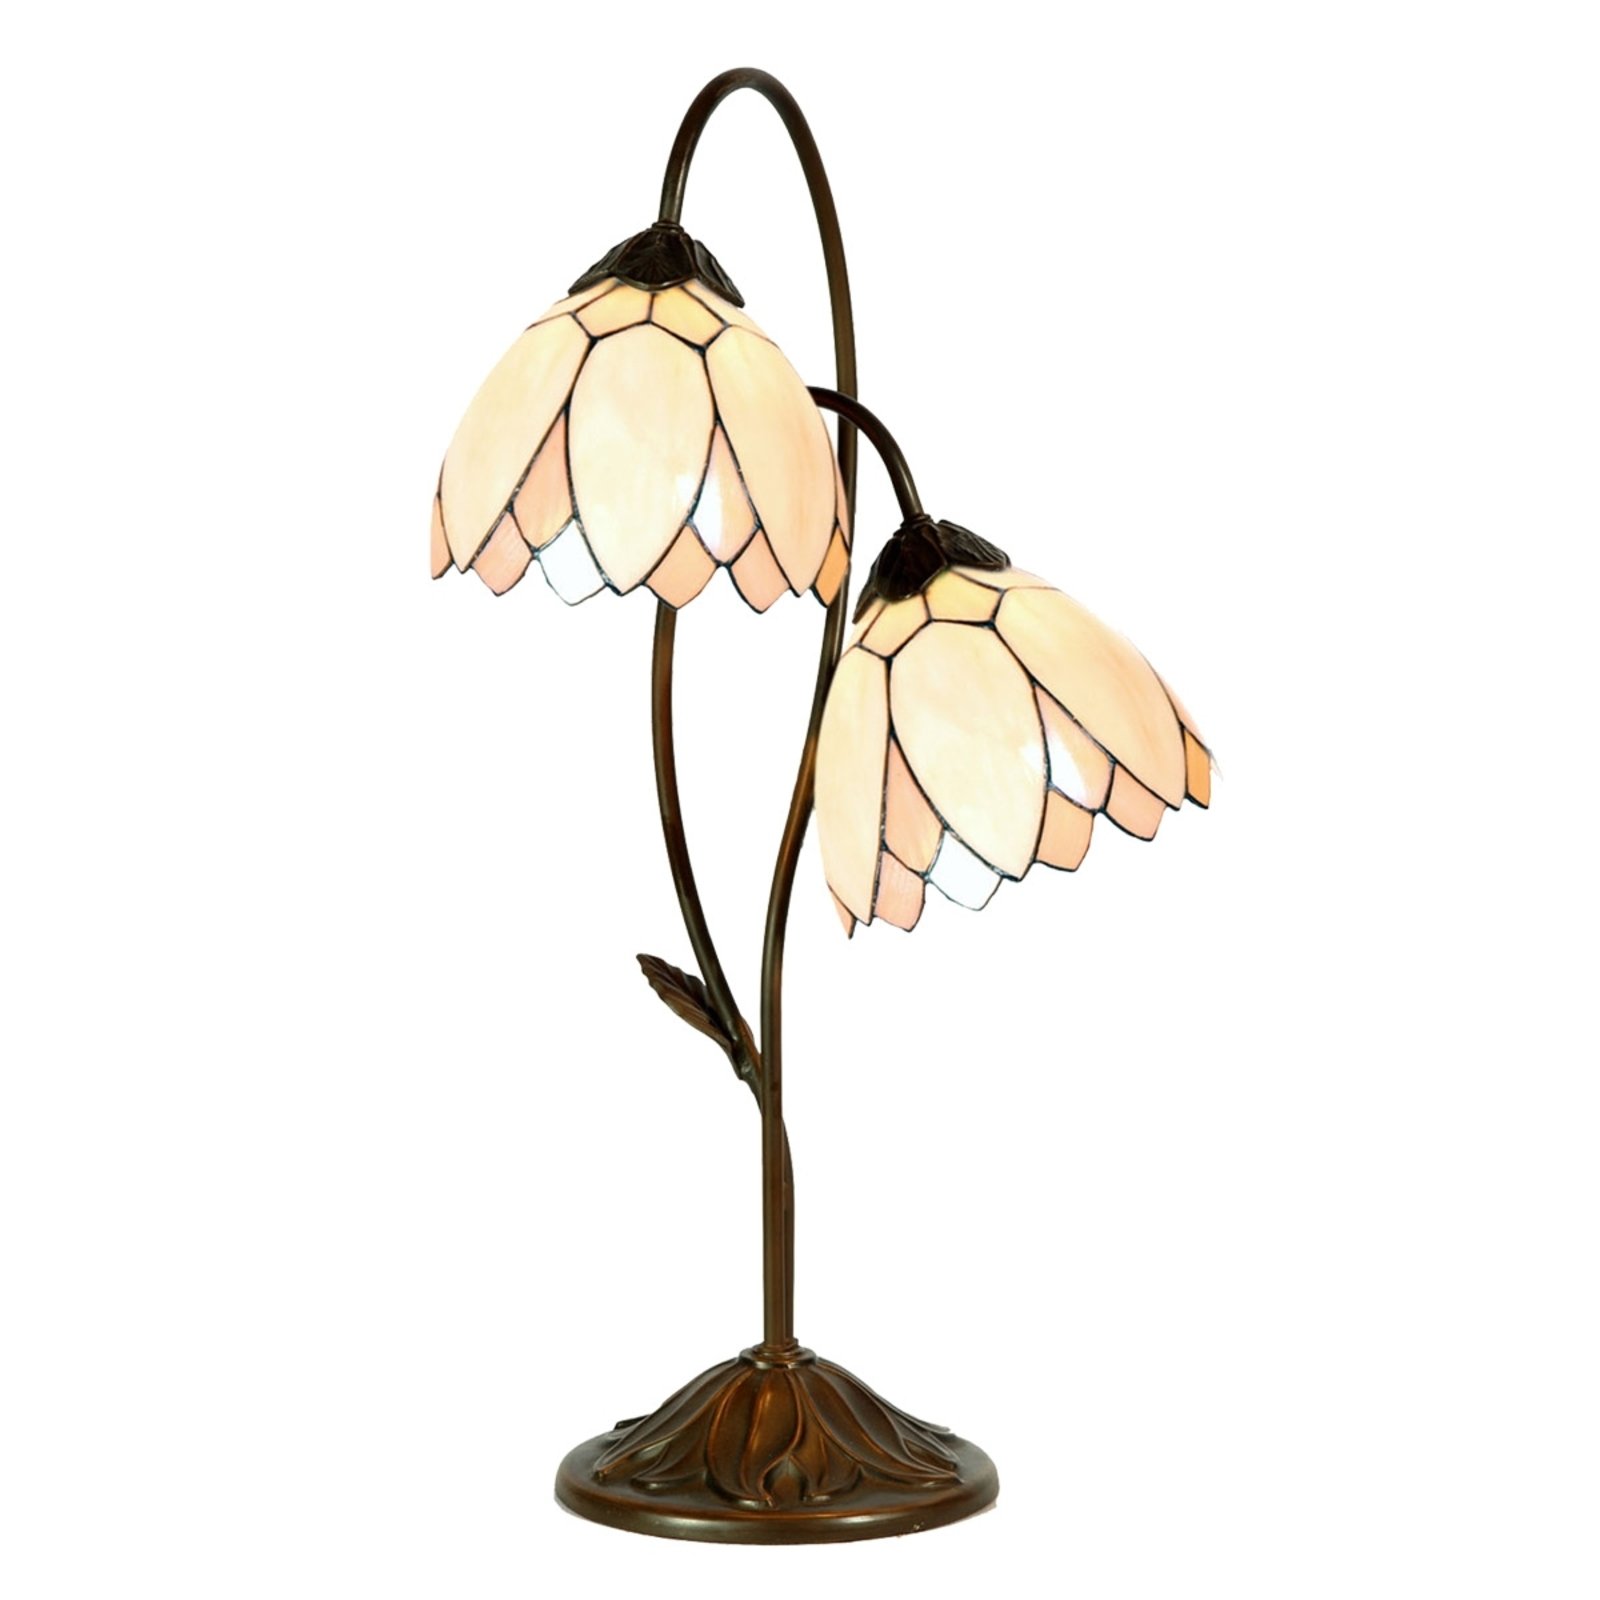 Tiffany style table lamp Lilliana, 2-light